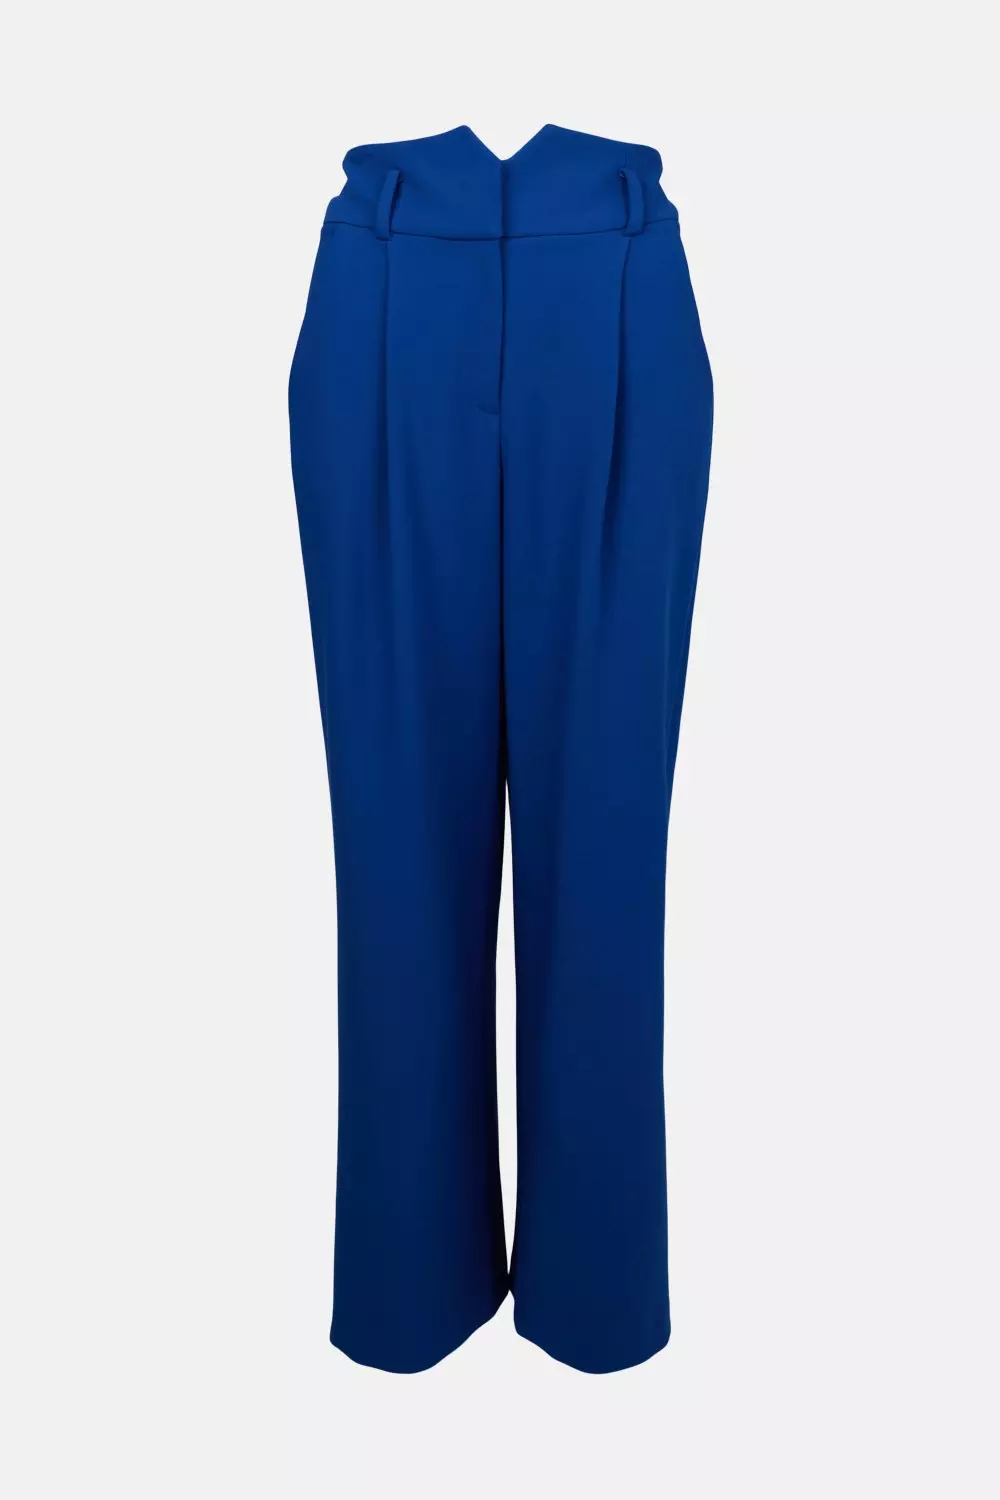 A Power Mood Cobalt Blue High-Waisted Wide Leg Trouser Pants